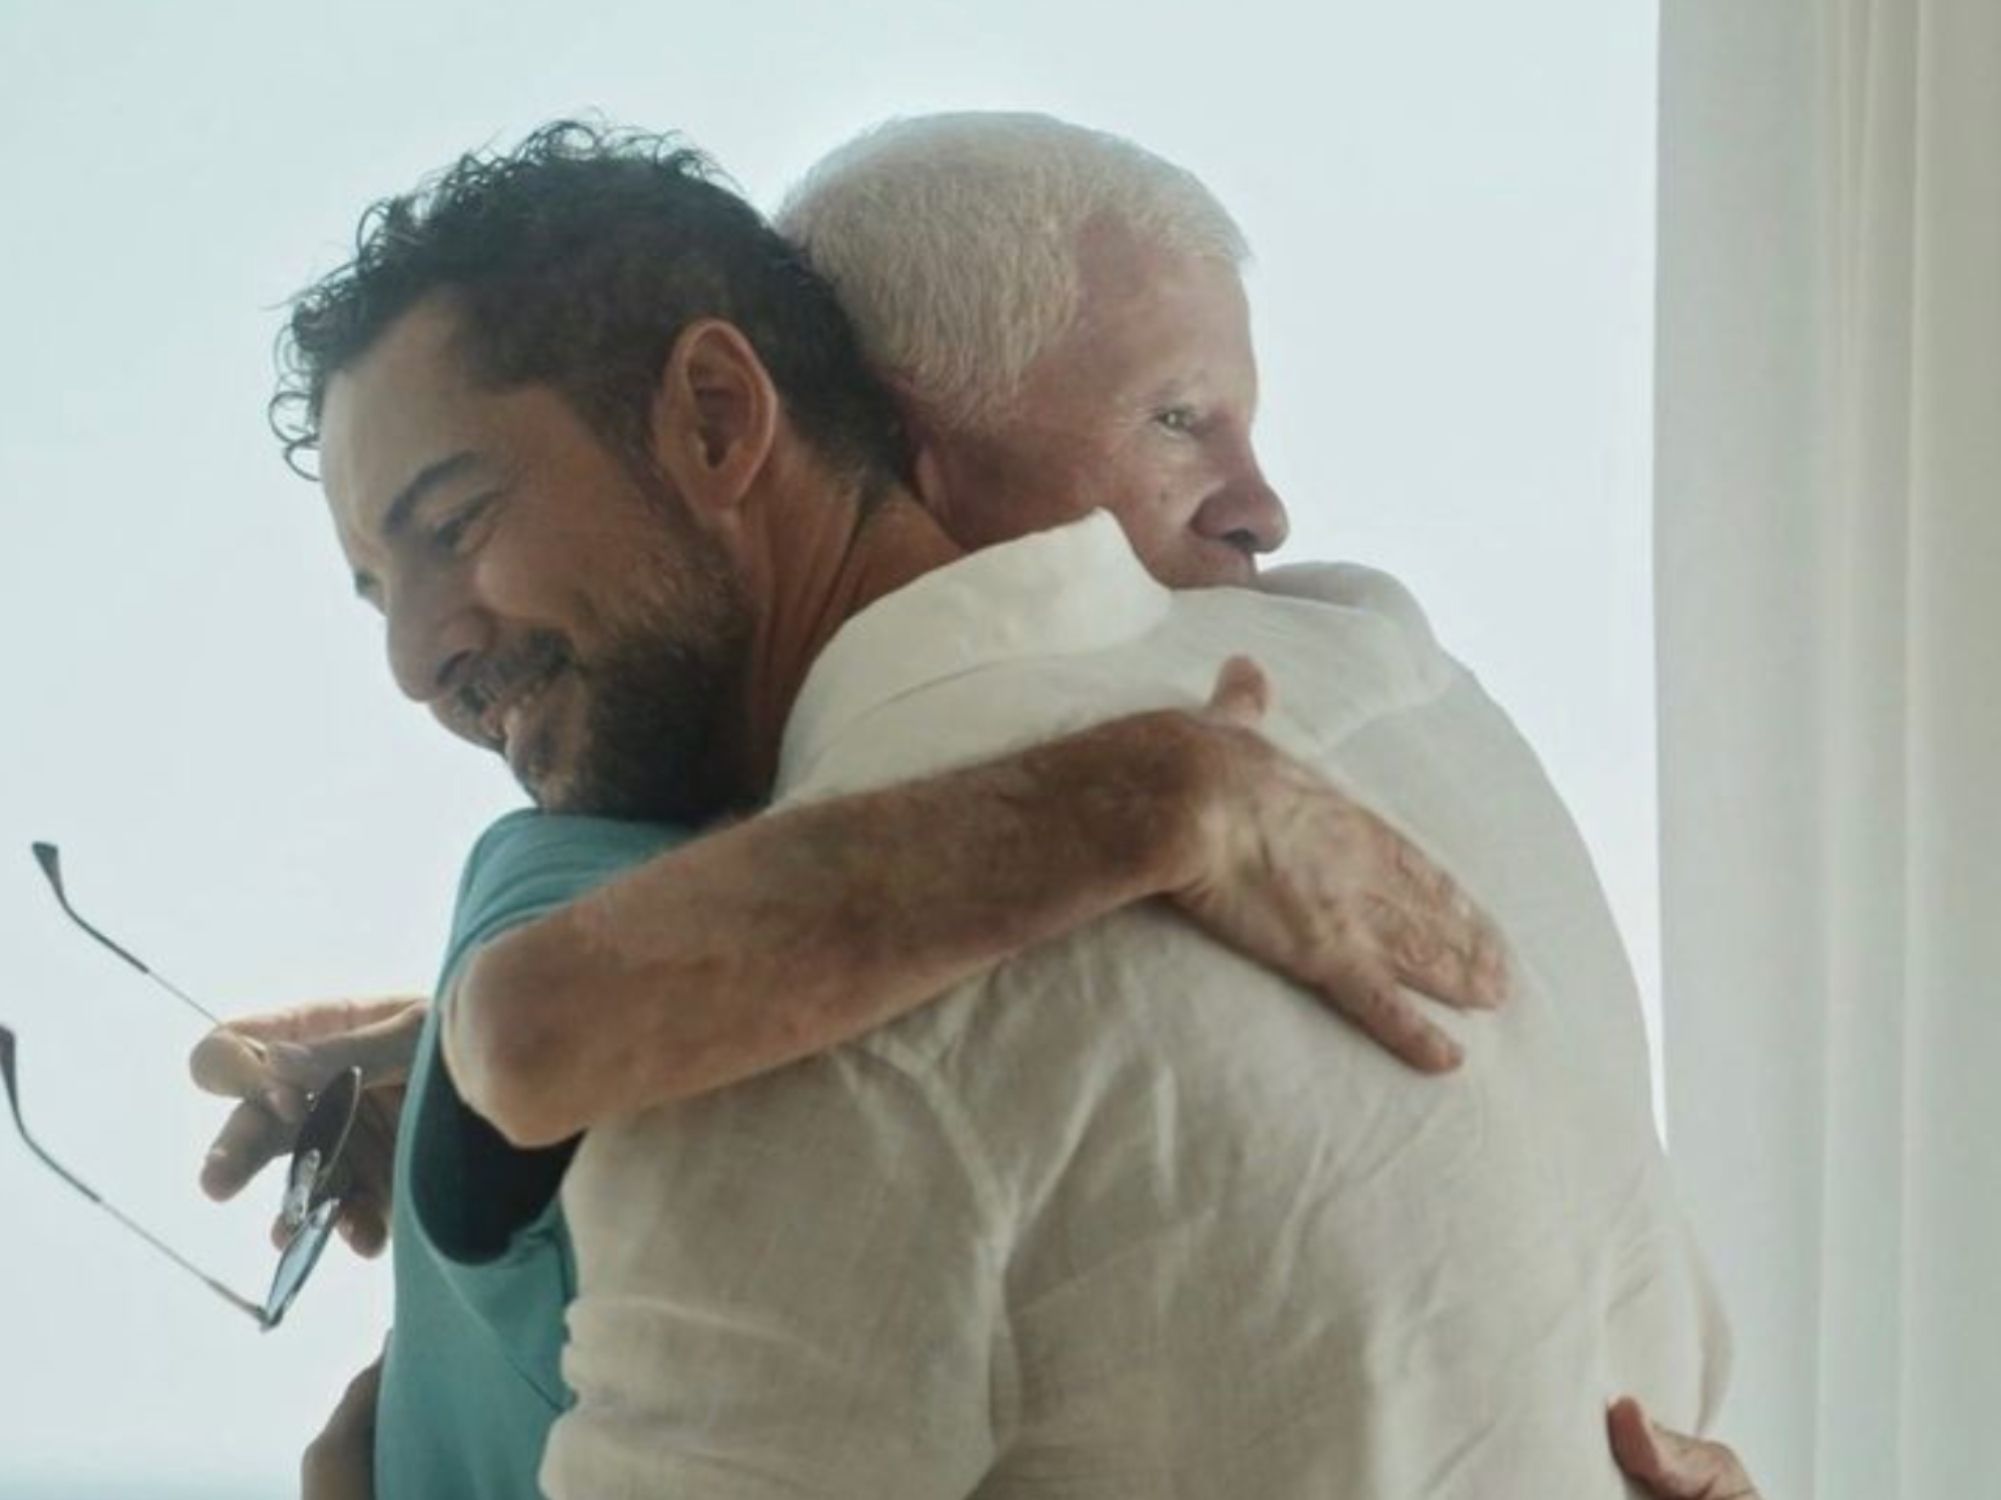 Las emotivas palabras de David Bisbal a su padre con alzhéimer: "Yo sí me acuerdo de ti". Foto: Instagram